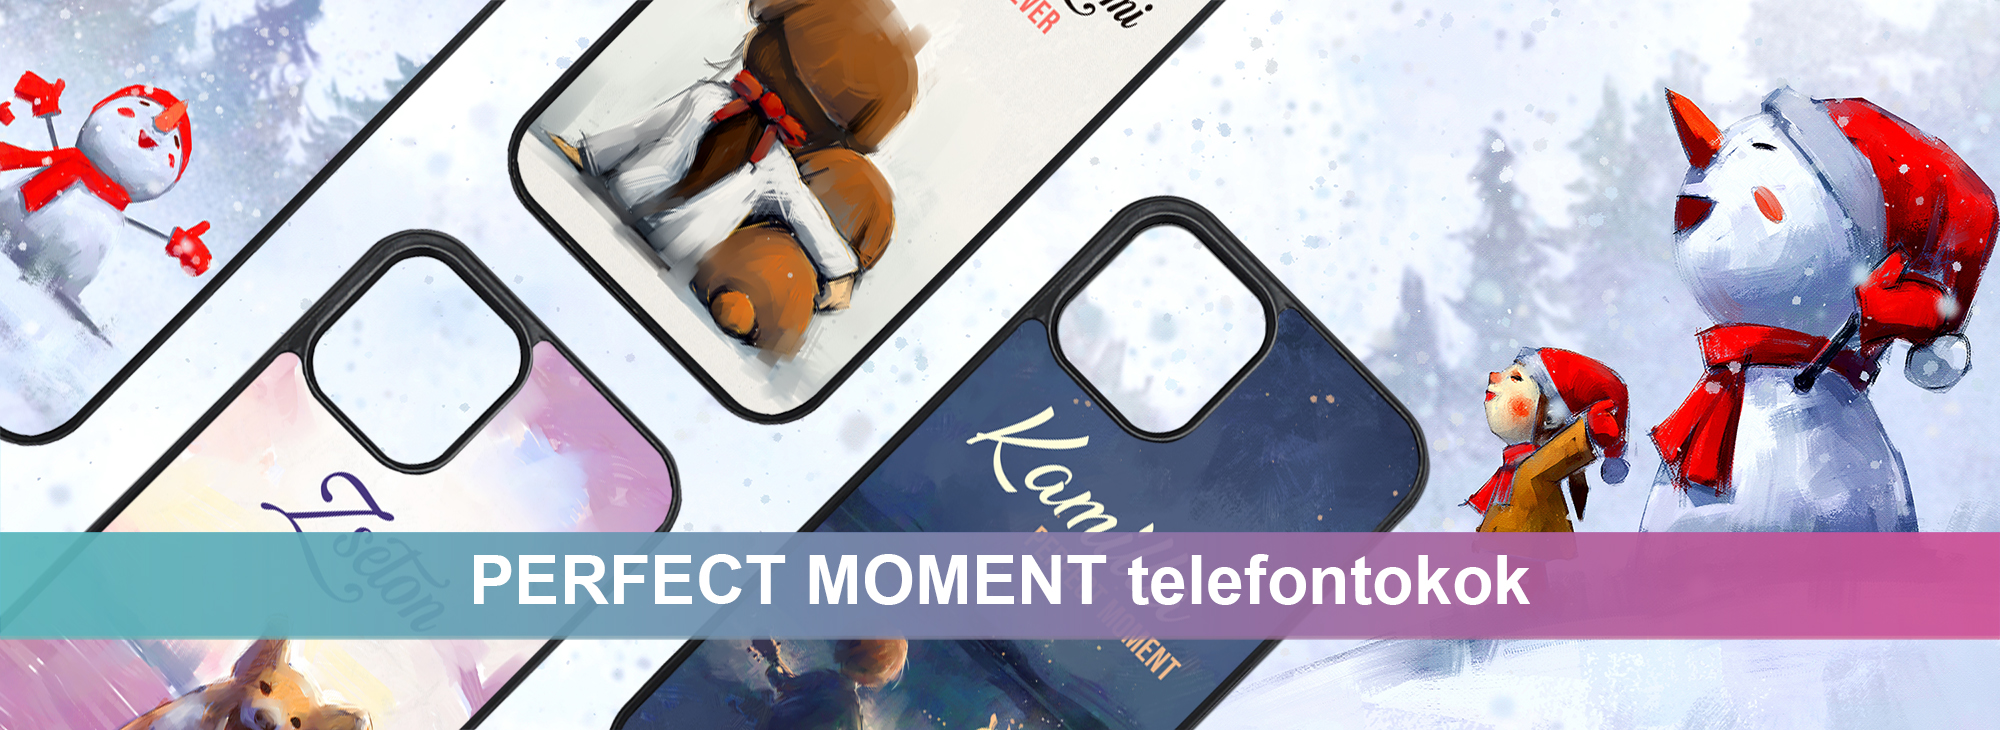 Perfect Moment kollekció - telefontokok | NAGYON Cuki.hu